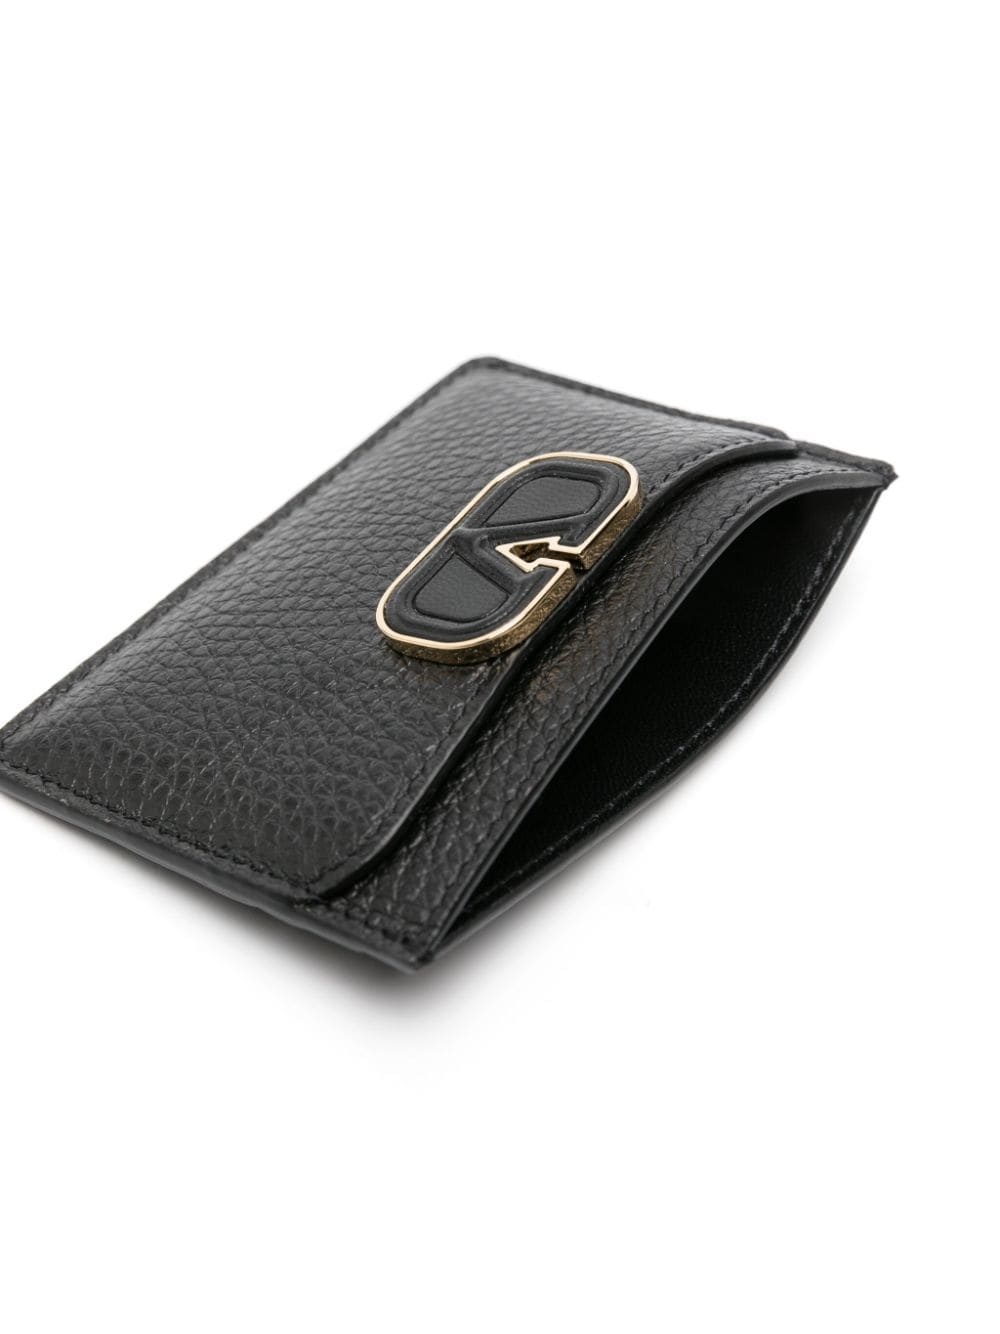 VLogo Signature leather cardholder - 3